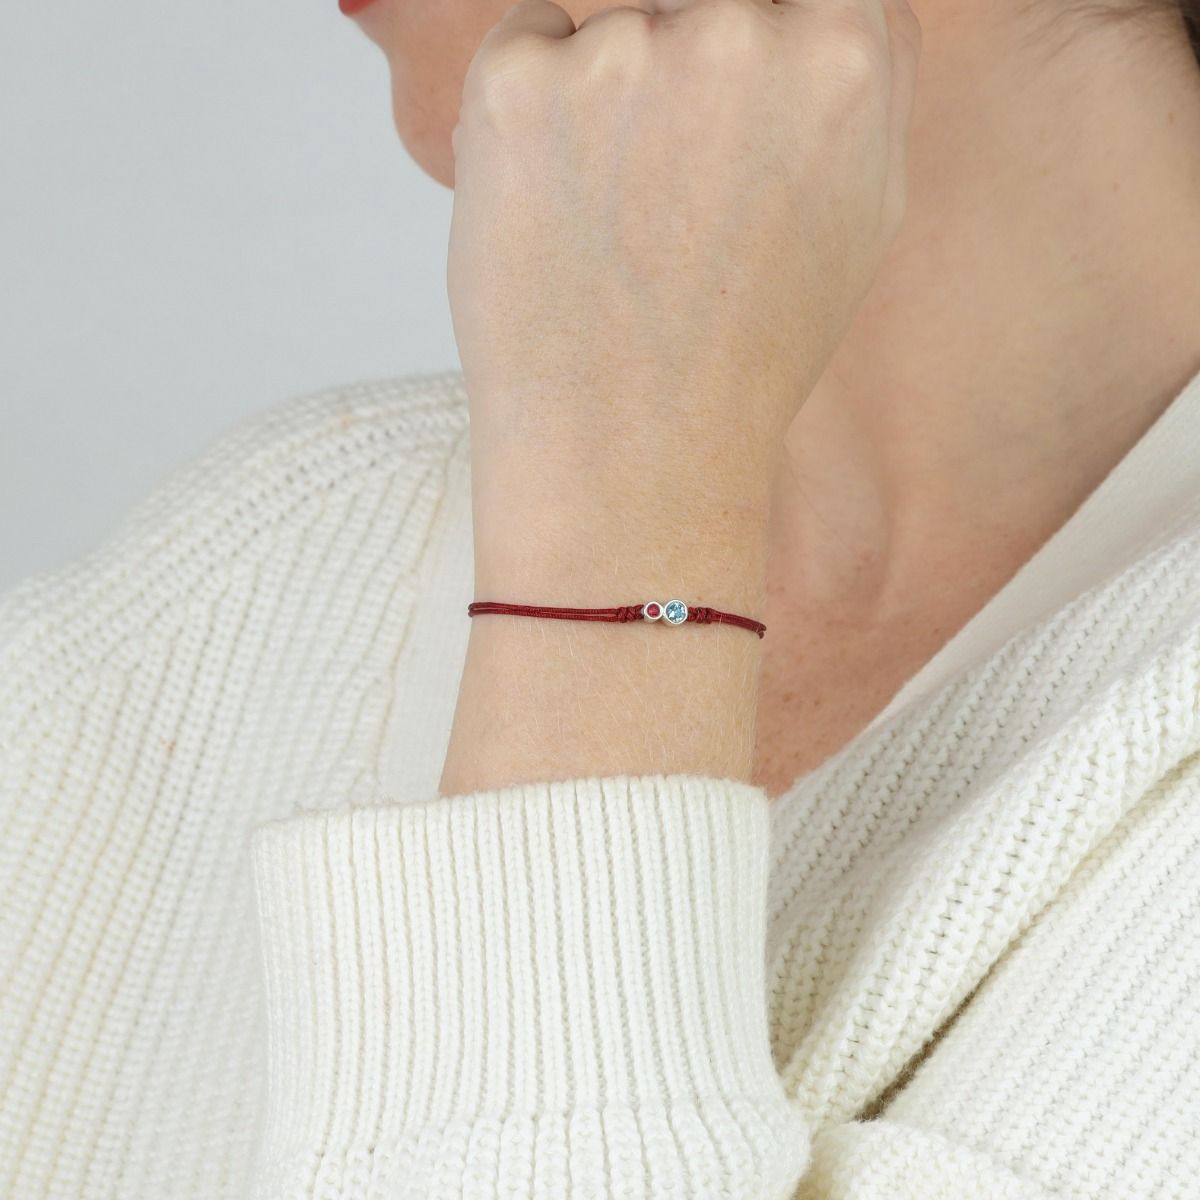 Mother's Birthstone Bracelet - Talisa - Adjustable Bracelet (Red